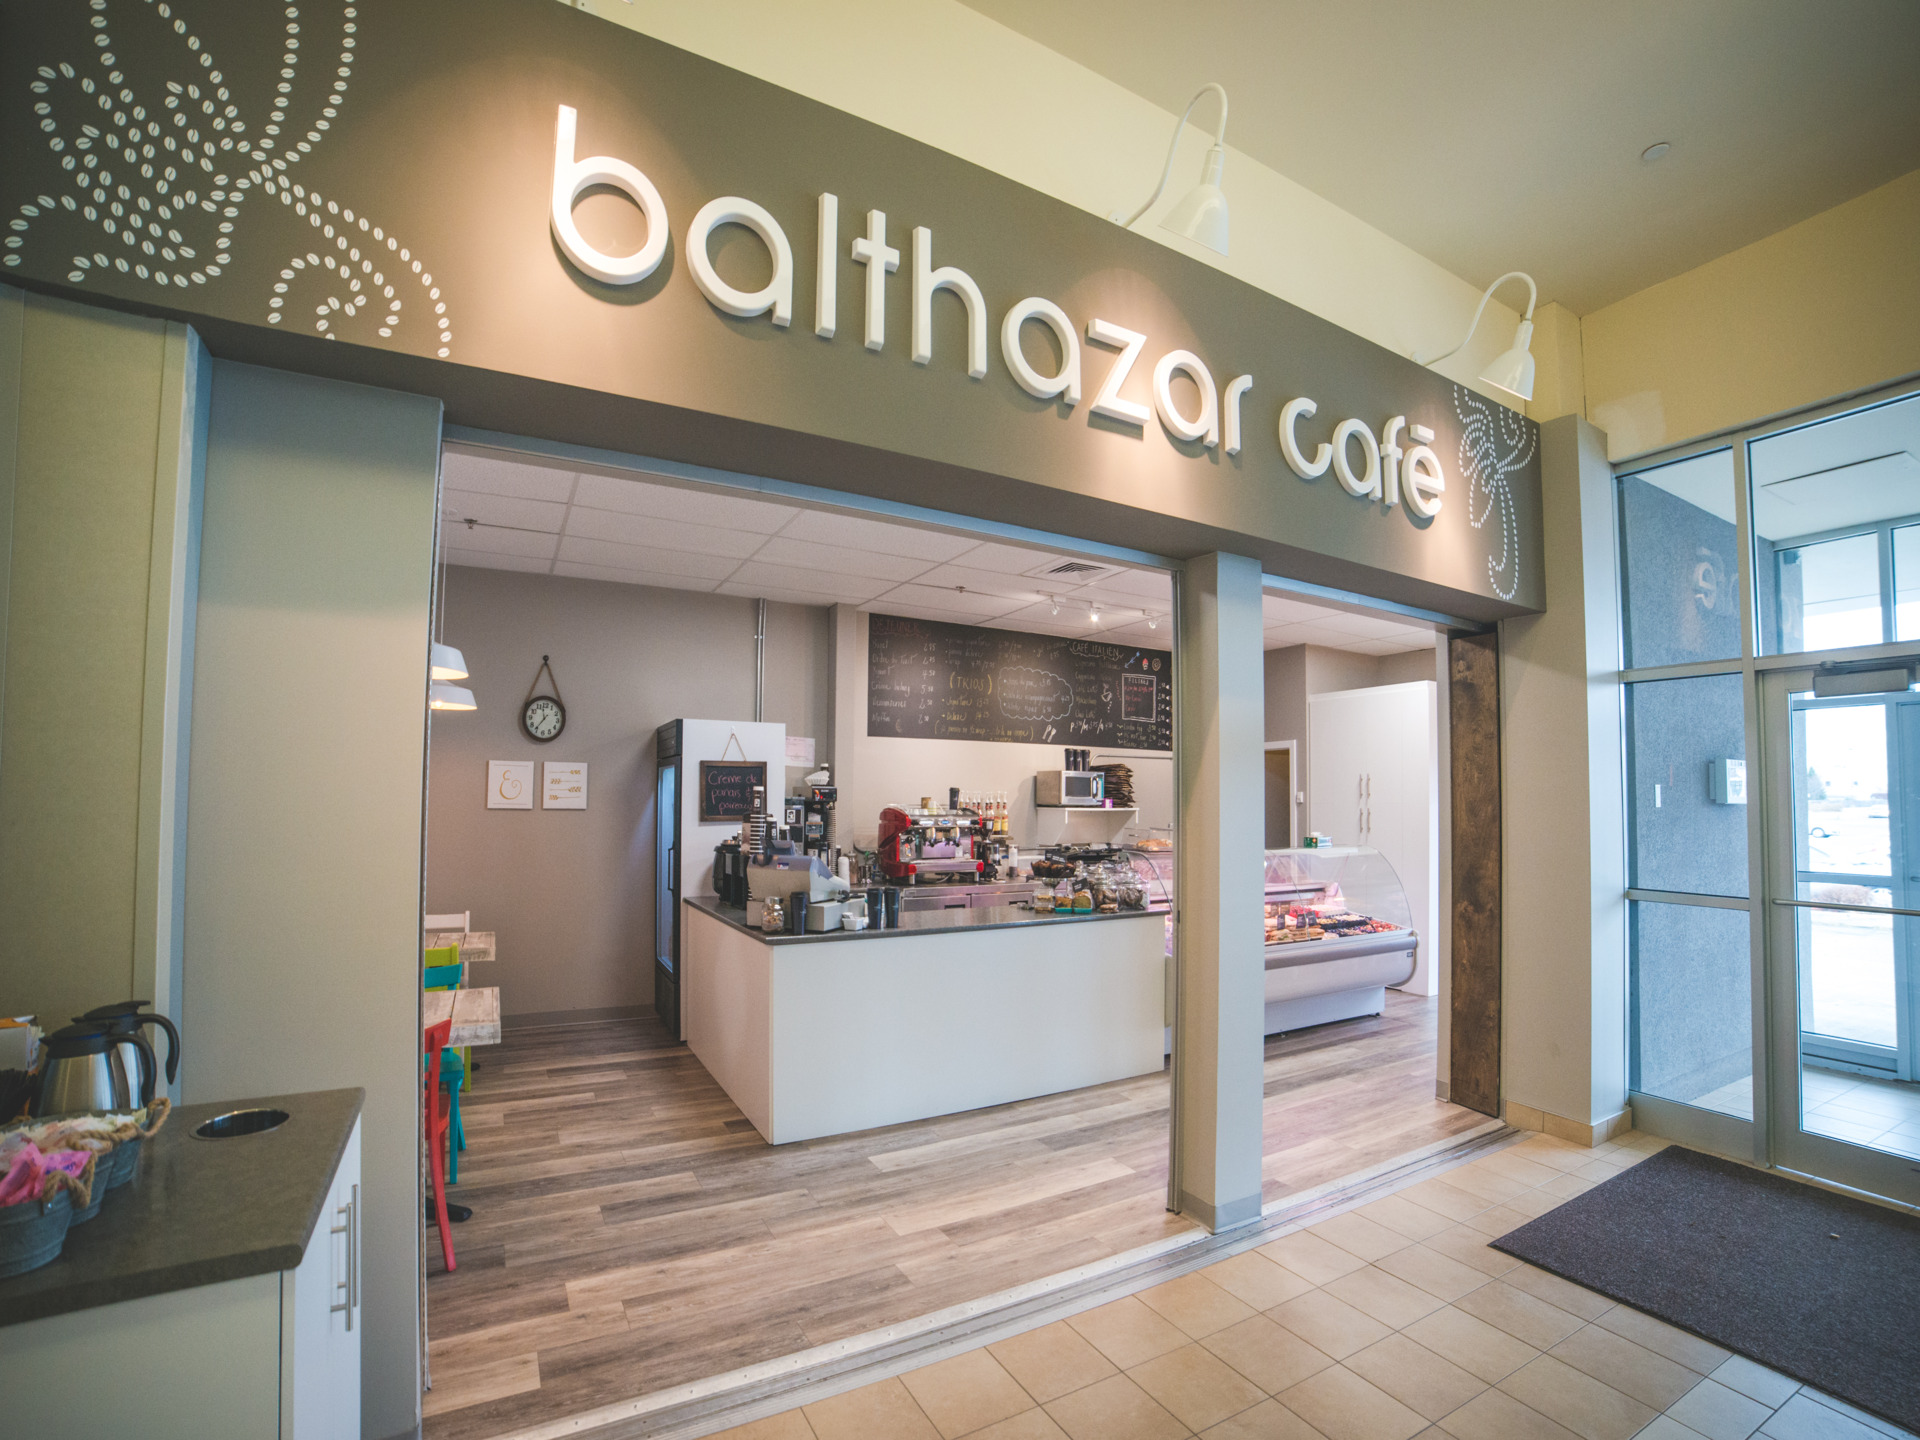 Balthazar Café